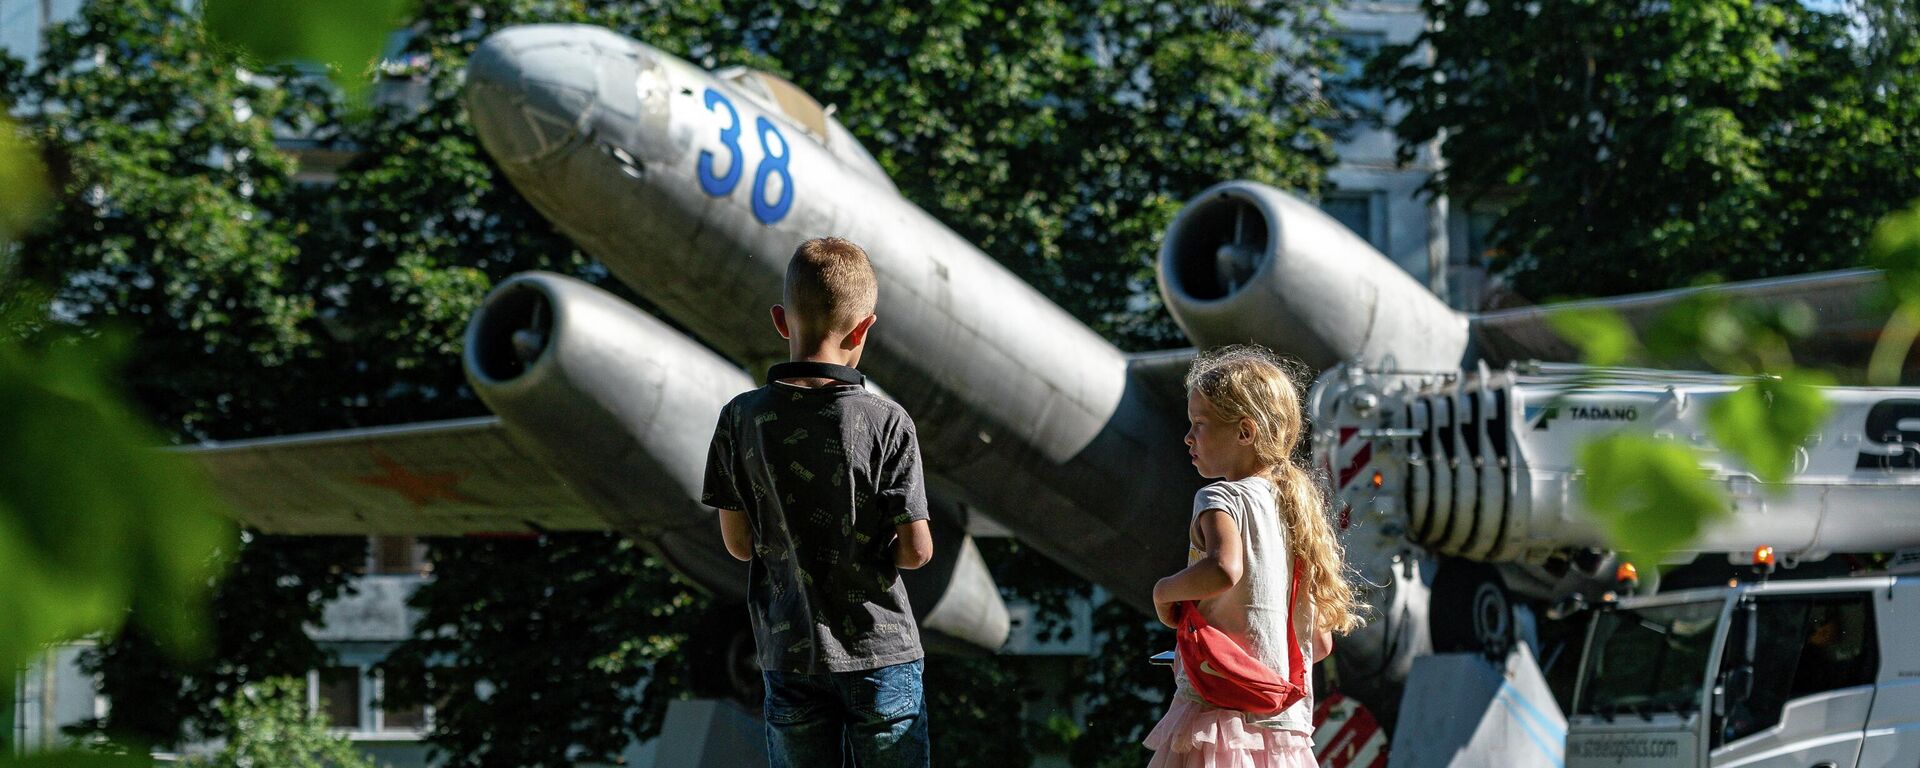 Бомбардировщик Ил-28, установленный в Скулте в память о советских летчиках, которые первыми бомбили Берлин, перевезли в музей авиации - Sputnik Латвия, 1920, 27.07.2022